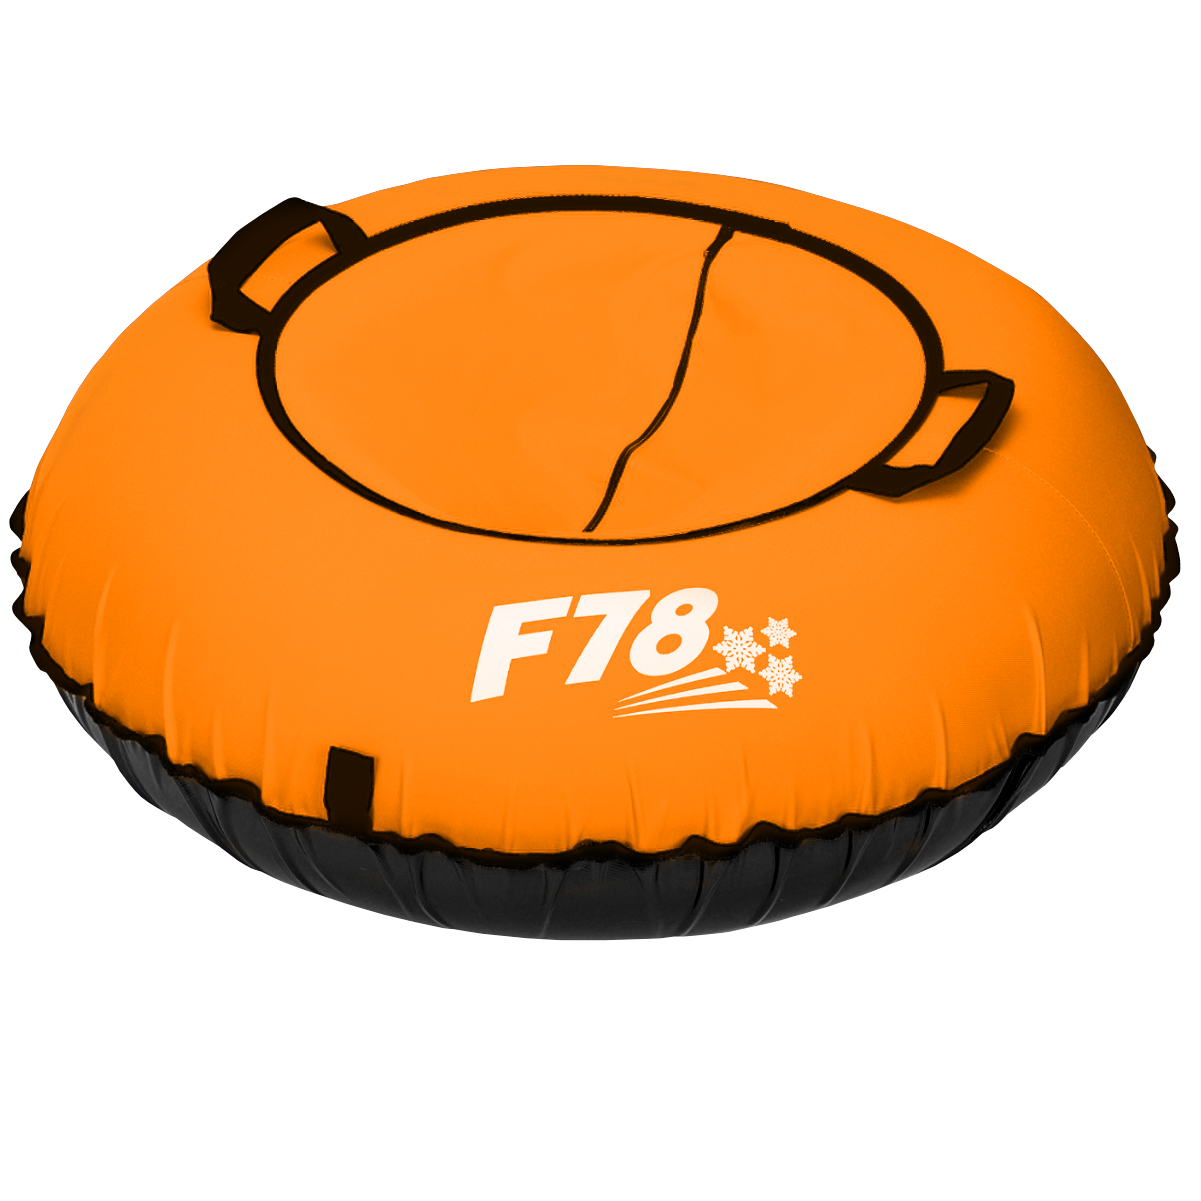 Тюбинг ватрушка F78 оранжевая Оксфорд 85 см, с камерой